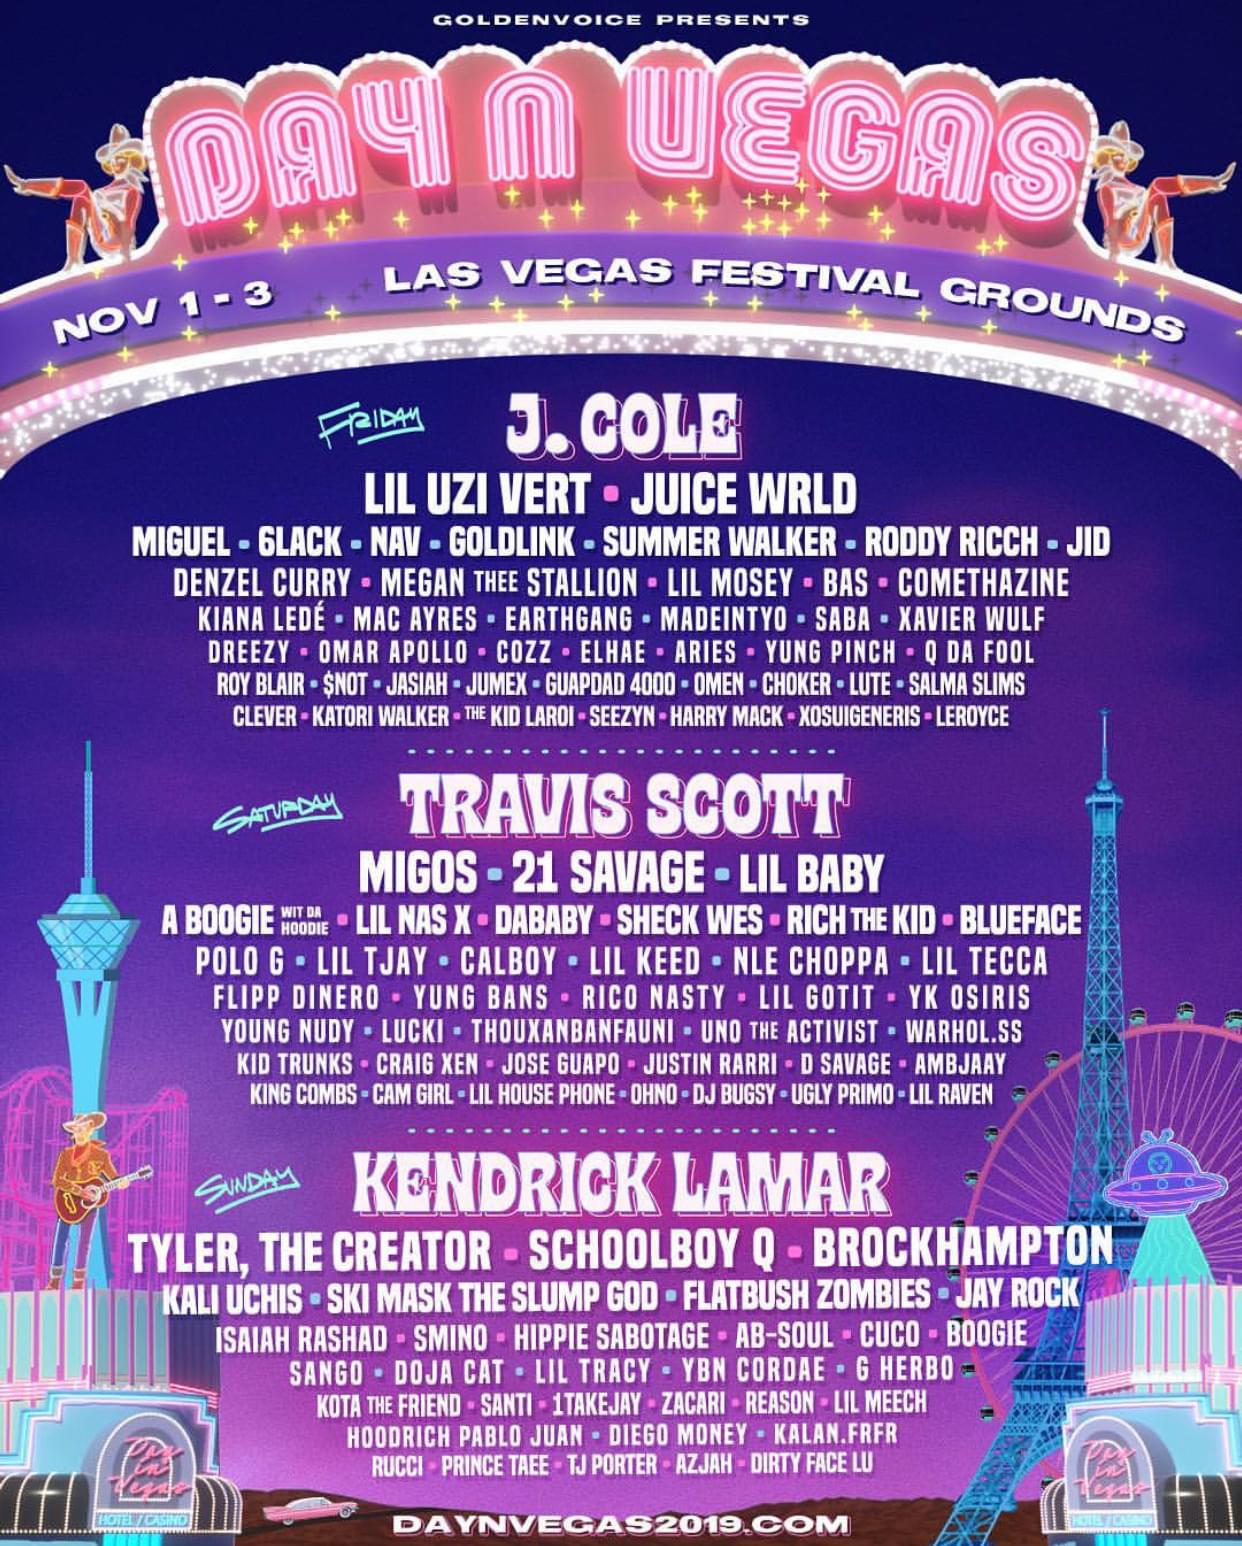 Day N Vegas Fest Lineup Includes J. Cole, Kendrick Lamar, Travis Scott, Migos + MORE